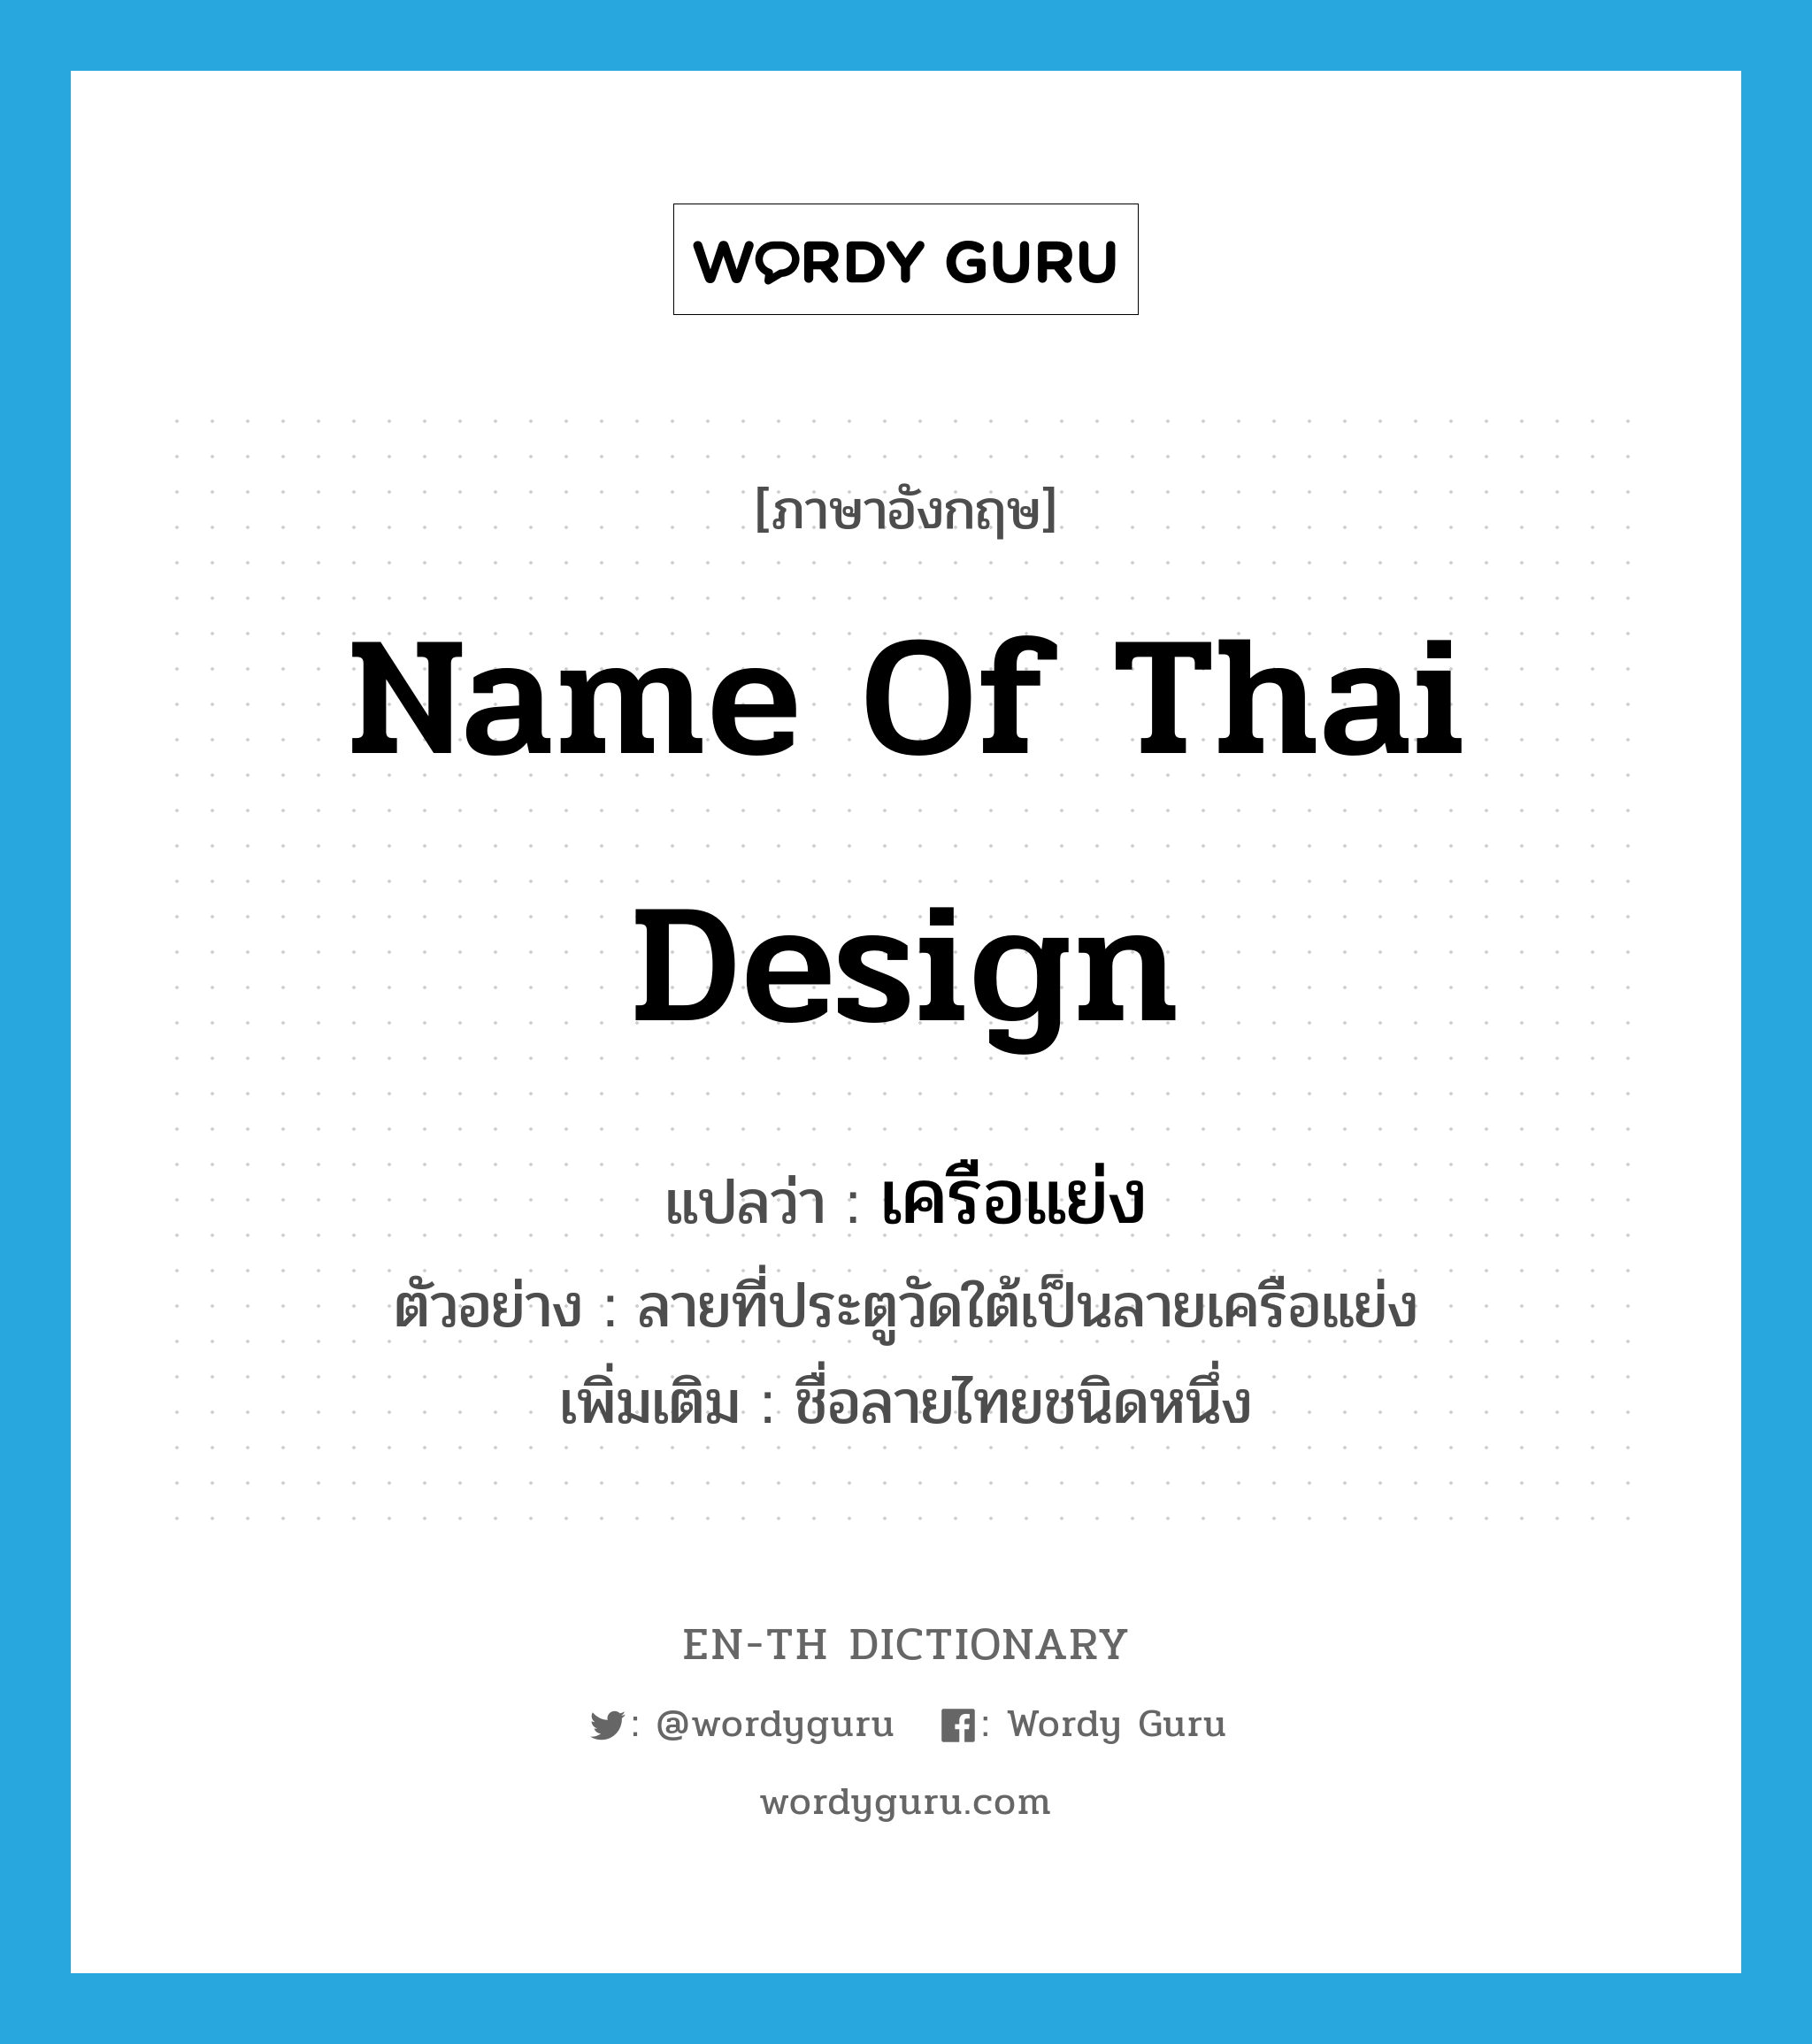 name of Thai design แปลว่า?, คำศัพท์ภาษาอังกฤษ name of Thai design แปลว่า เครือแย่ง ประเภท N ตัวอย่าง ลายที่ประตูวัดใต้เป็นลายเครือแย่ง เพิ่มเติม ชื่อลายไทยชนิดหนึ่ง หมวด N